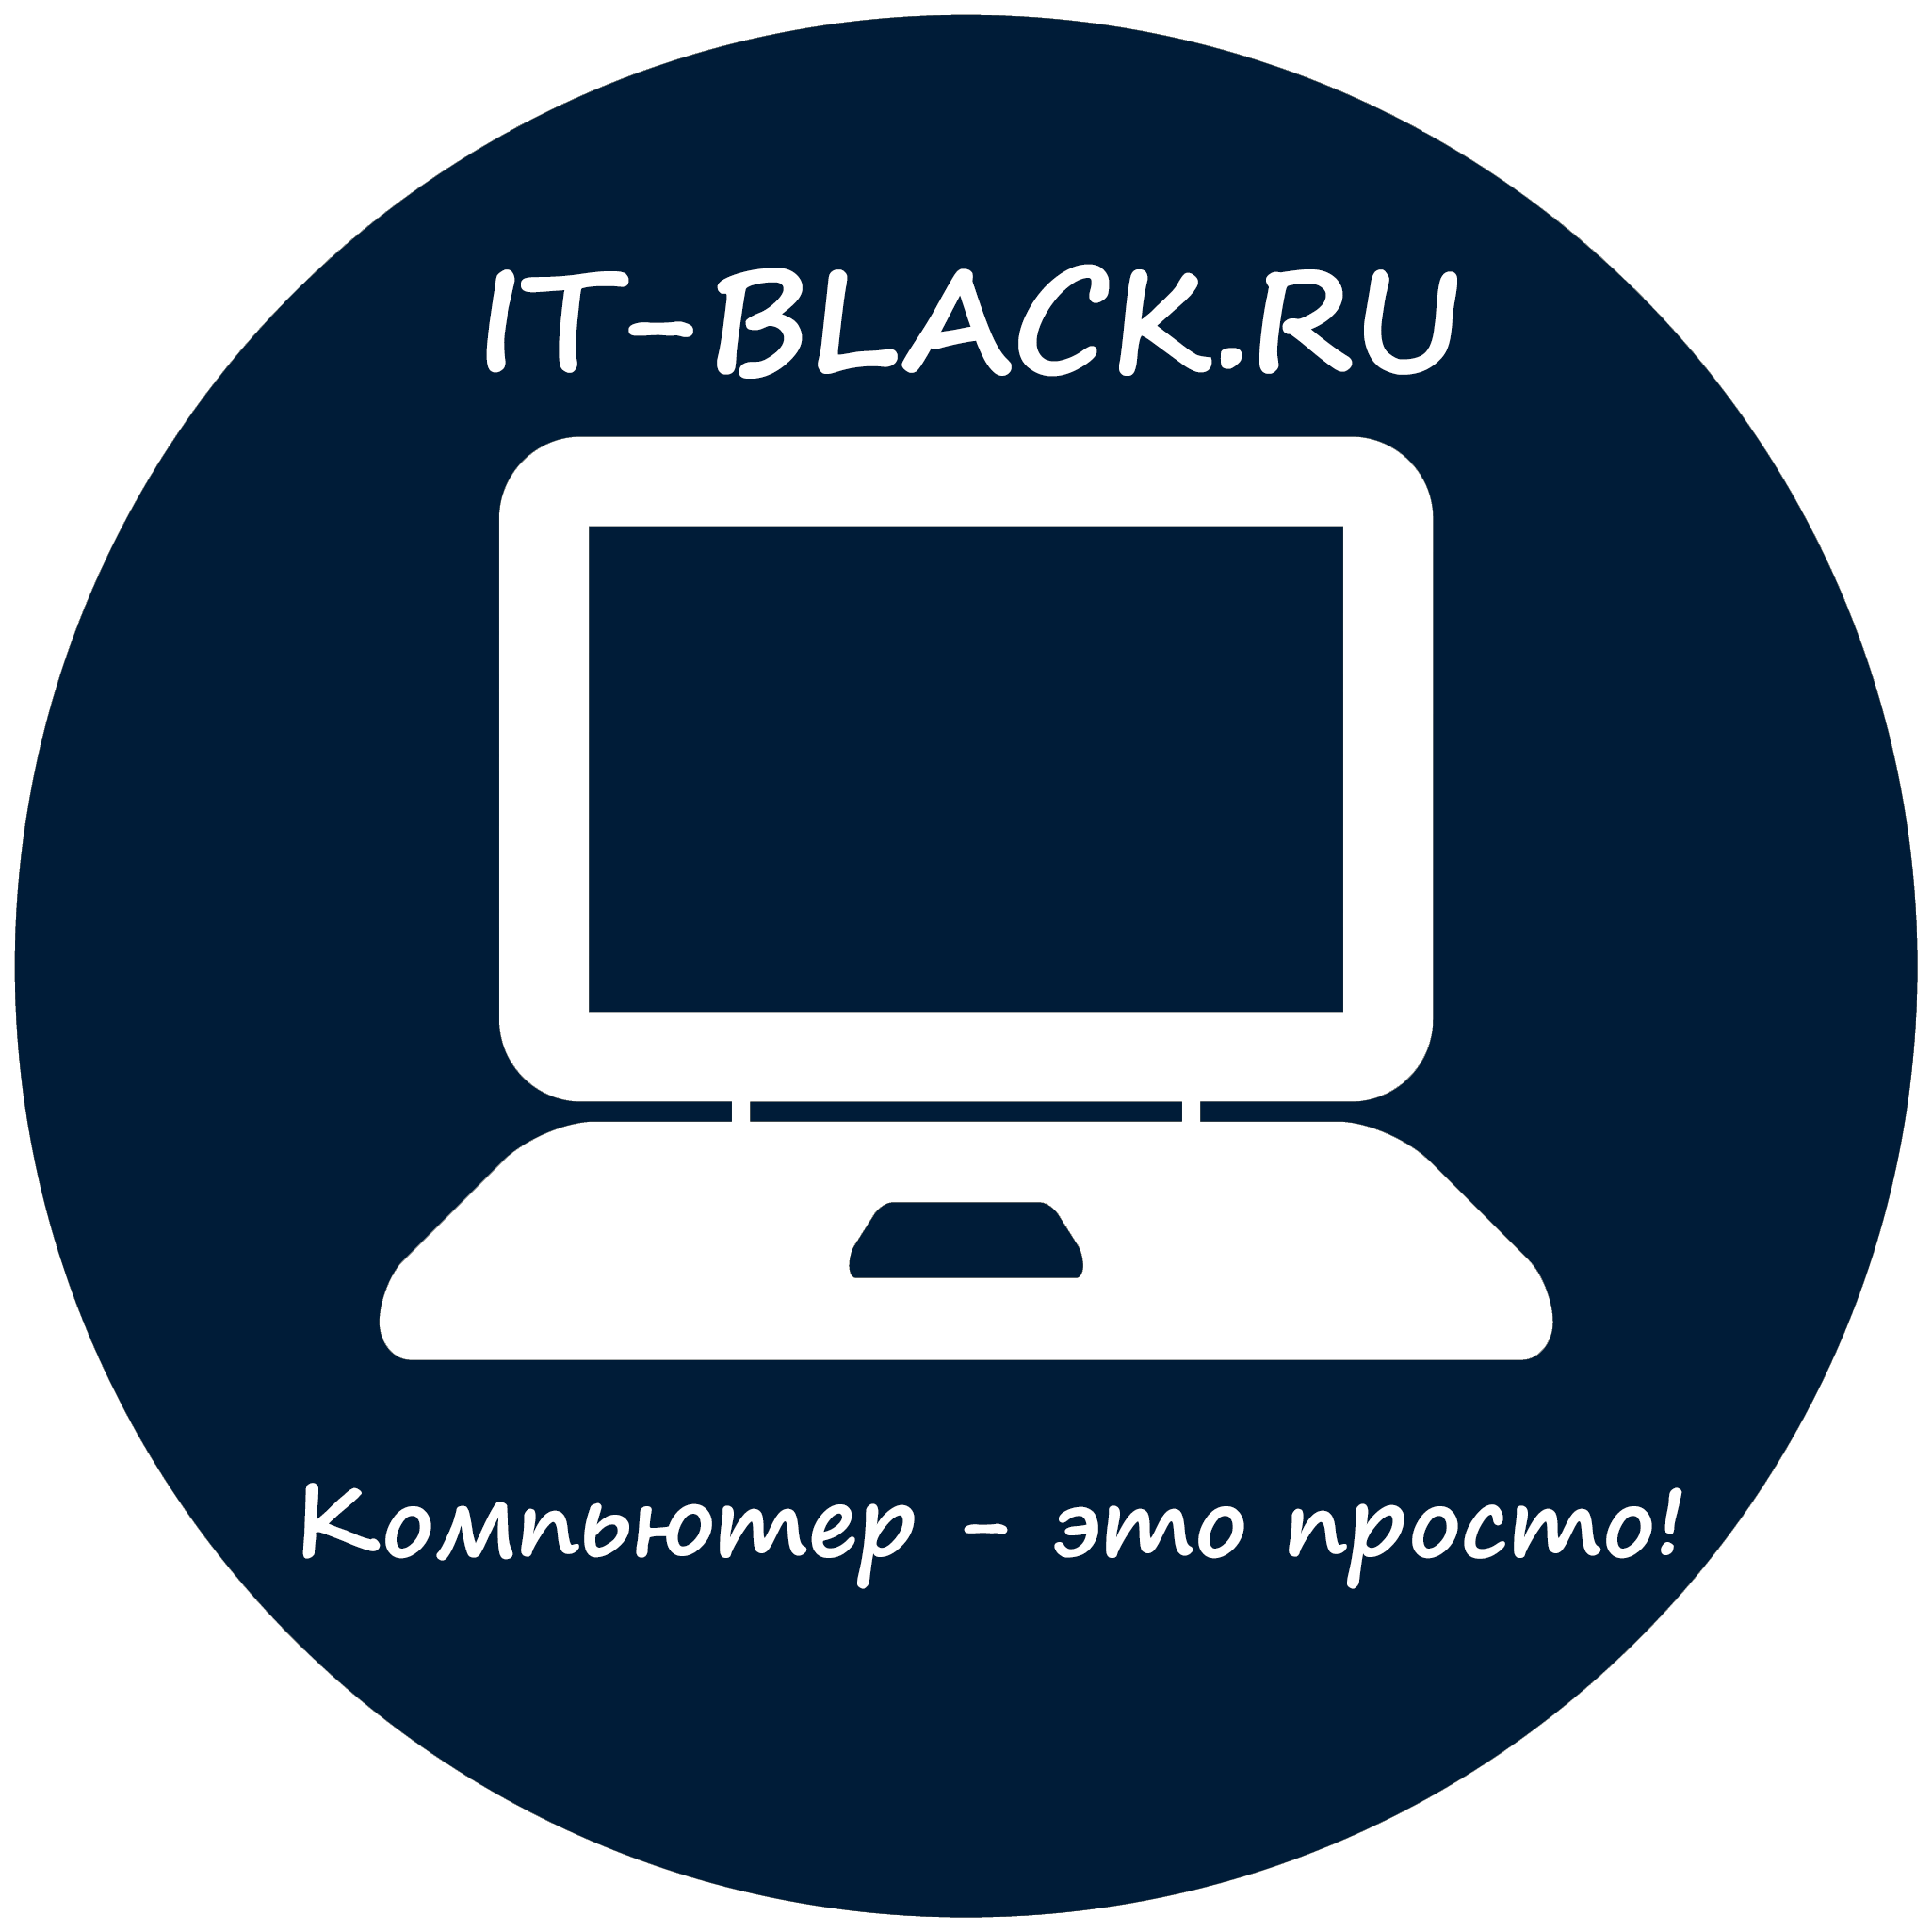 IT-BLACK.RU